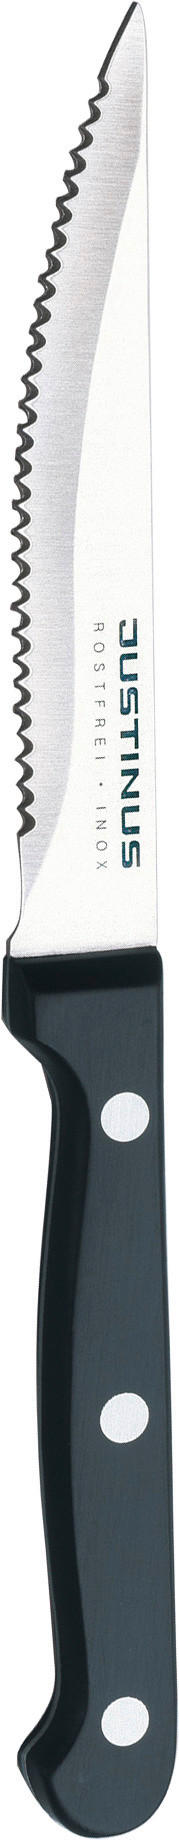 NOŽ ZA BIFTEK  11 cm   - boja nerđajućeg čelika/crna, Konvencionalno, metal/plastika (11cm) - Justinus